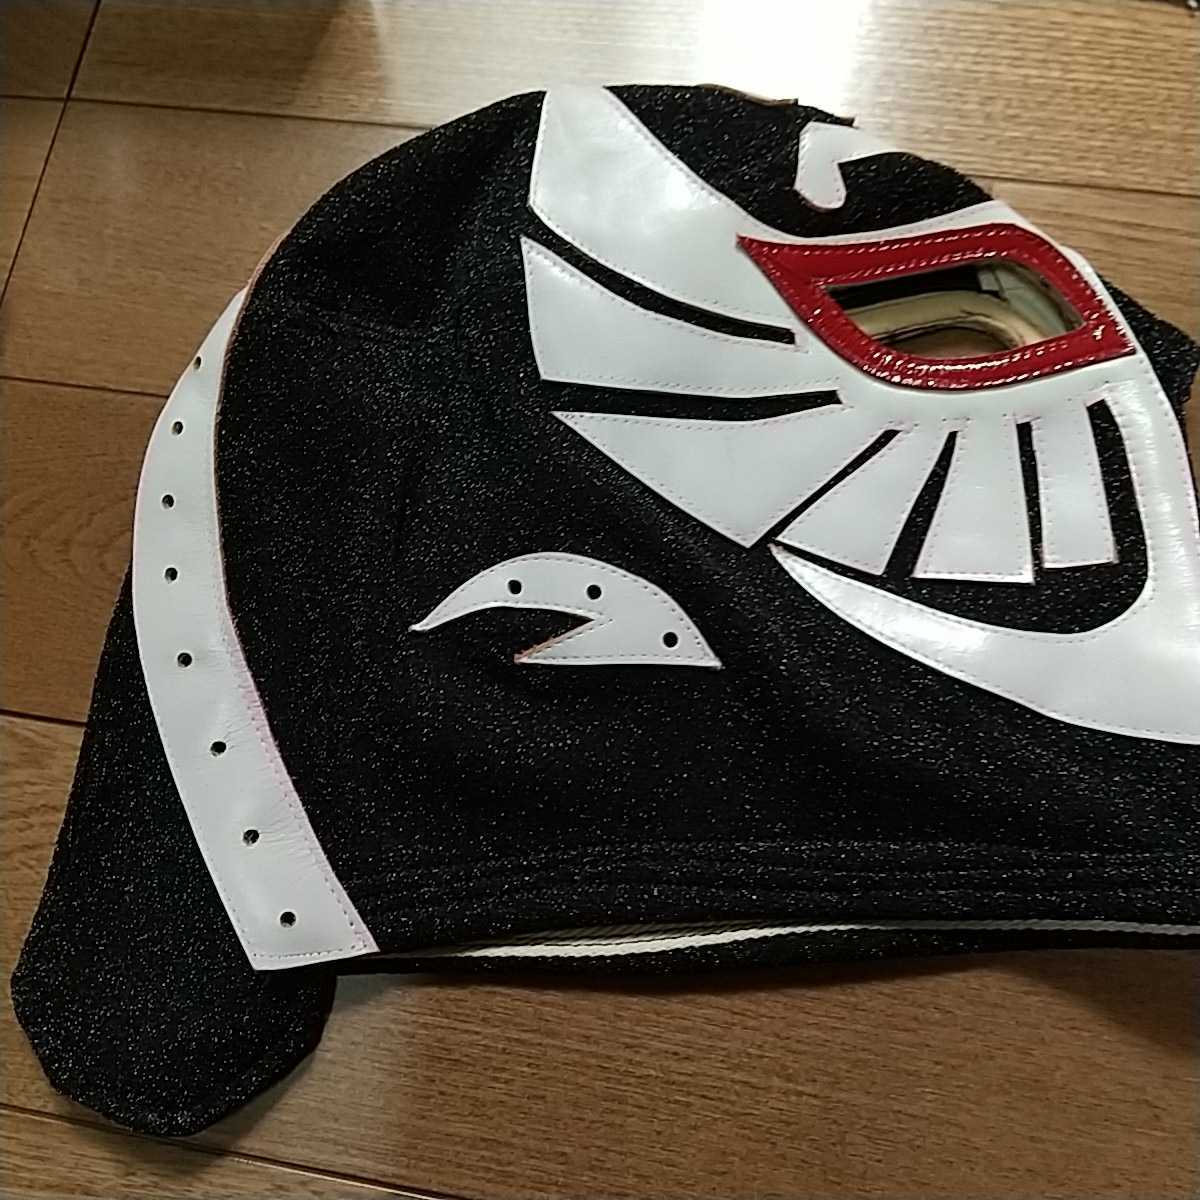  The Cobra соревнование для маска, подлинный товар, New Japan Professional Wrestling, Tiger Mask 